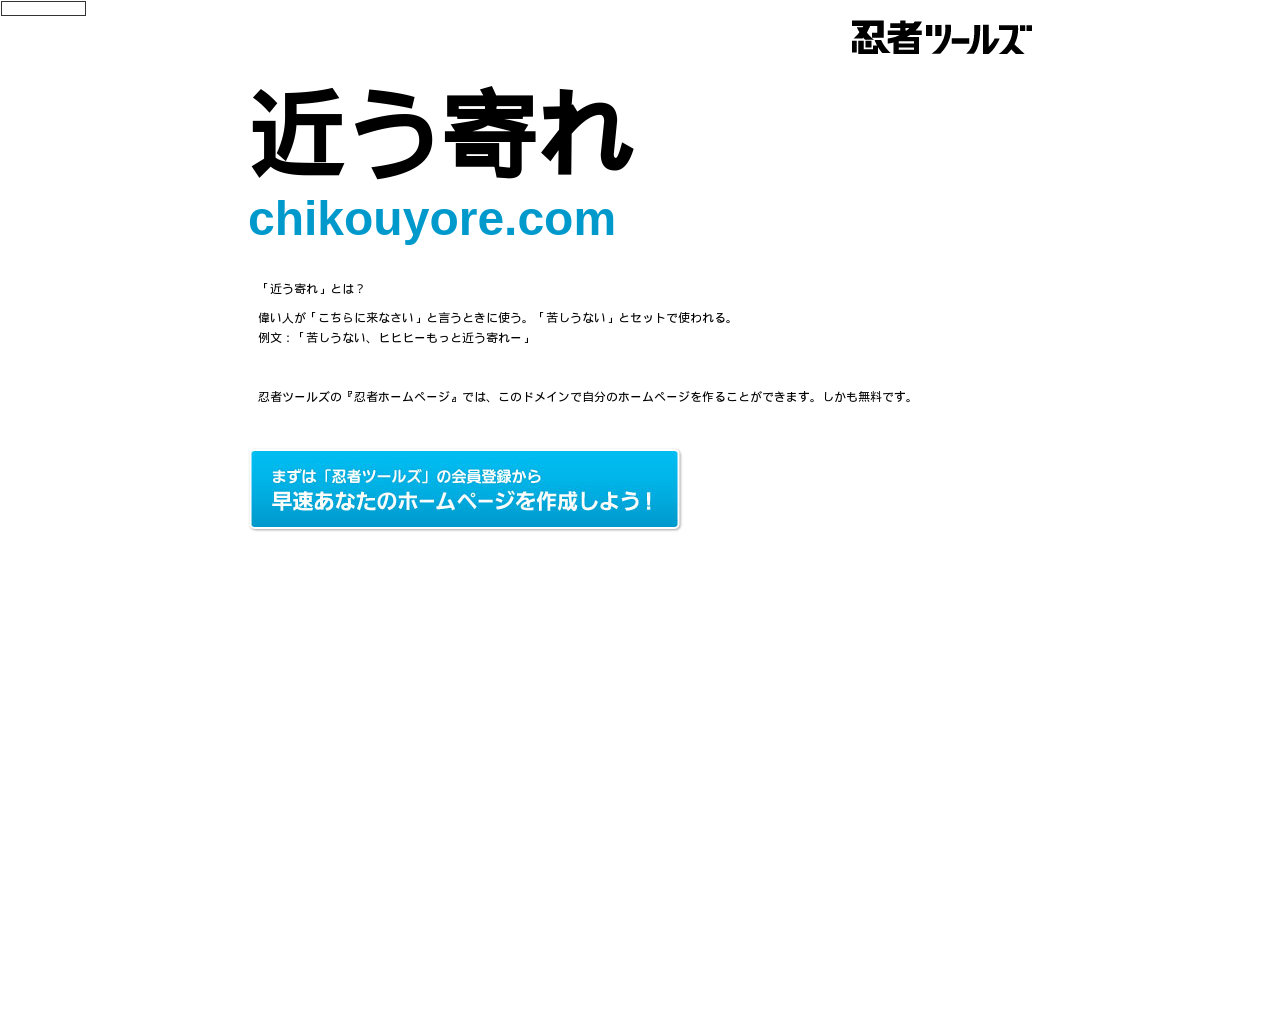 chikouyore.com